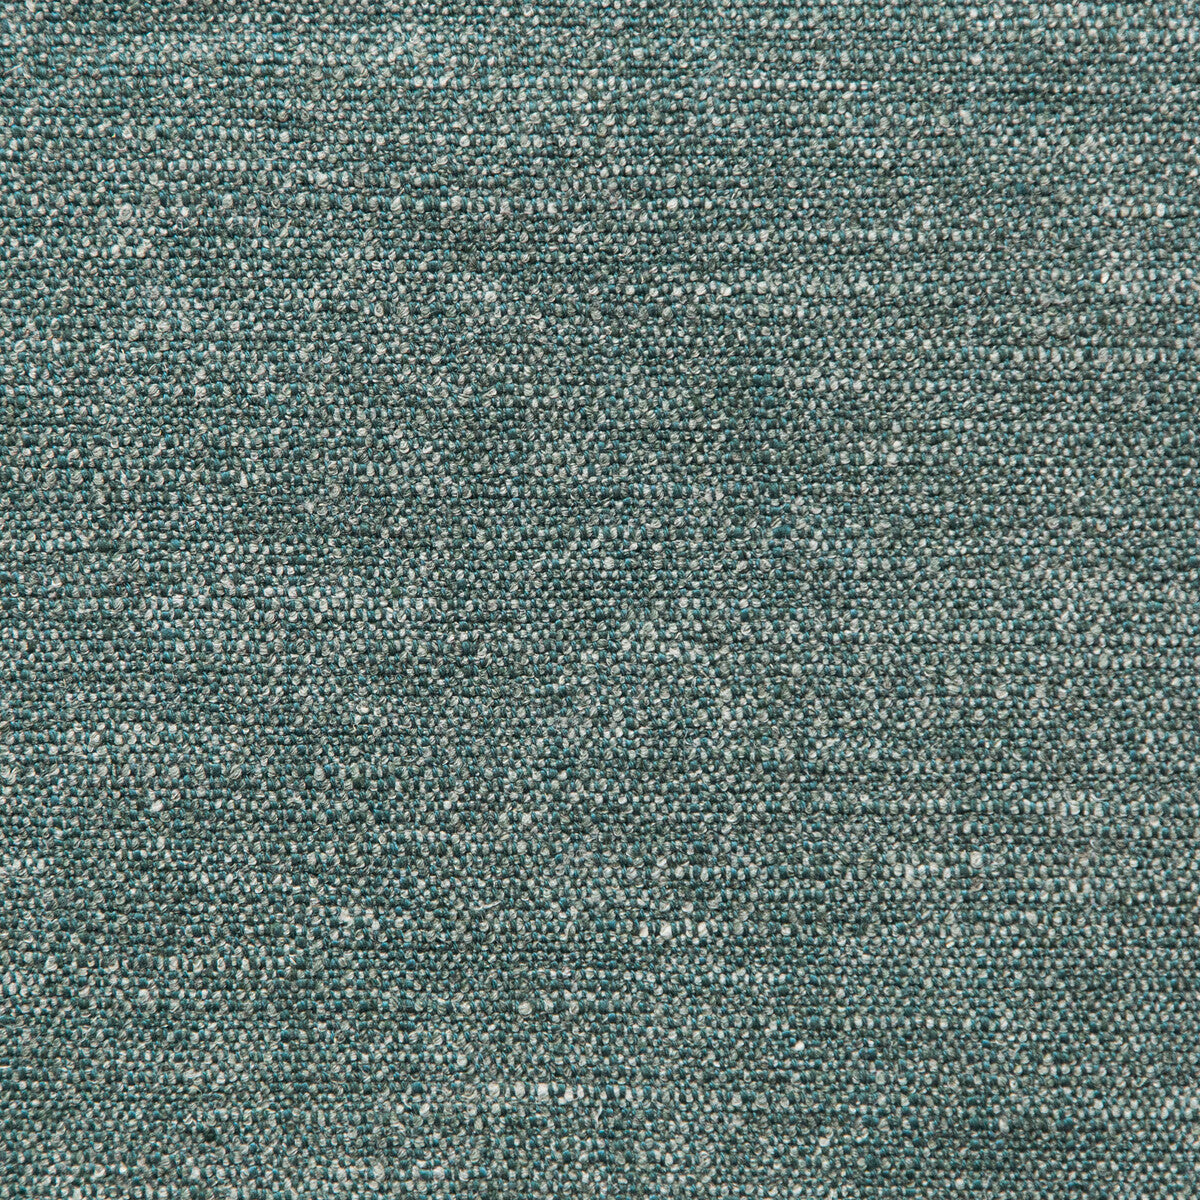 Kravet Design fabric in 35561-3 color - pattern 35561.3.0 - by Kravet Design